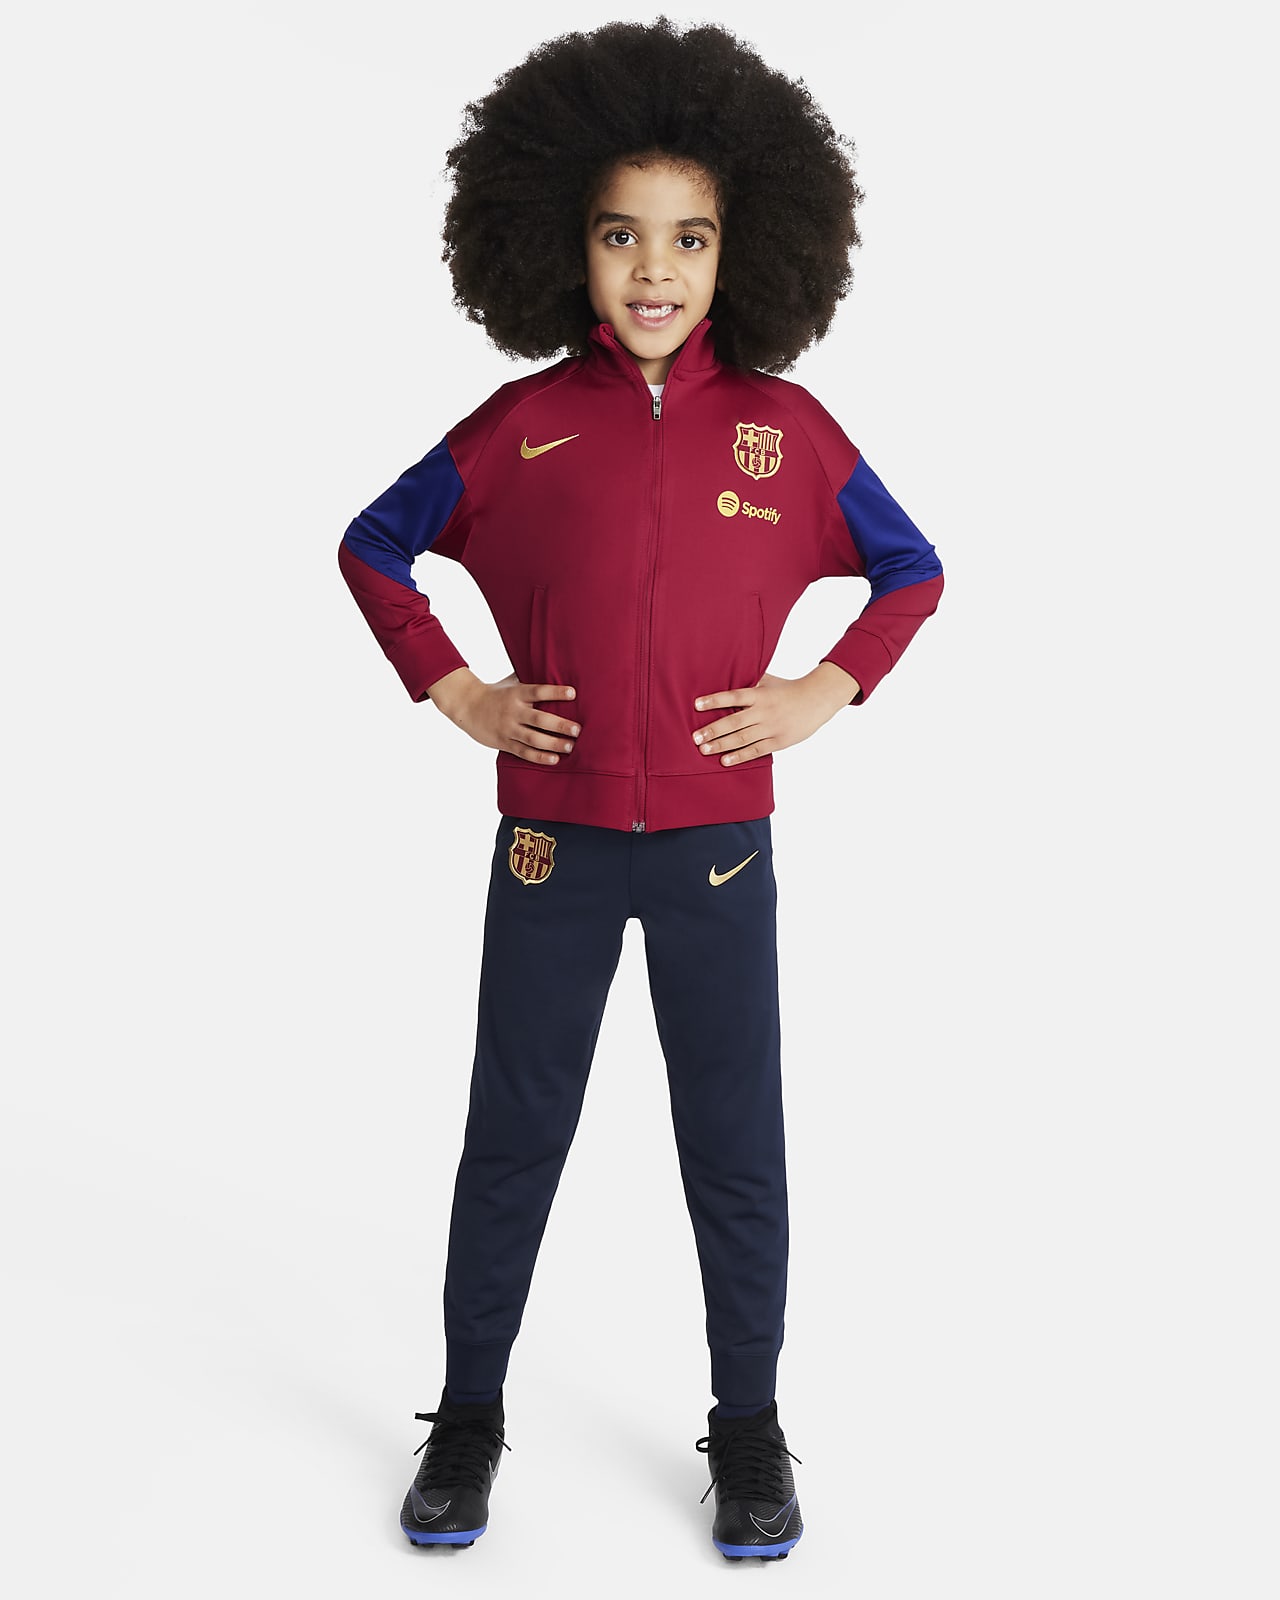 Ποδοσφαιρική πλεκτή φόρμα Nike Dri-FIT Μπαρτσελόνα Strike για μικρά παιδιά